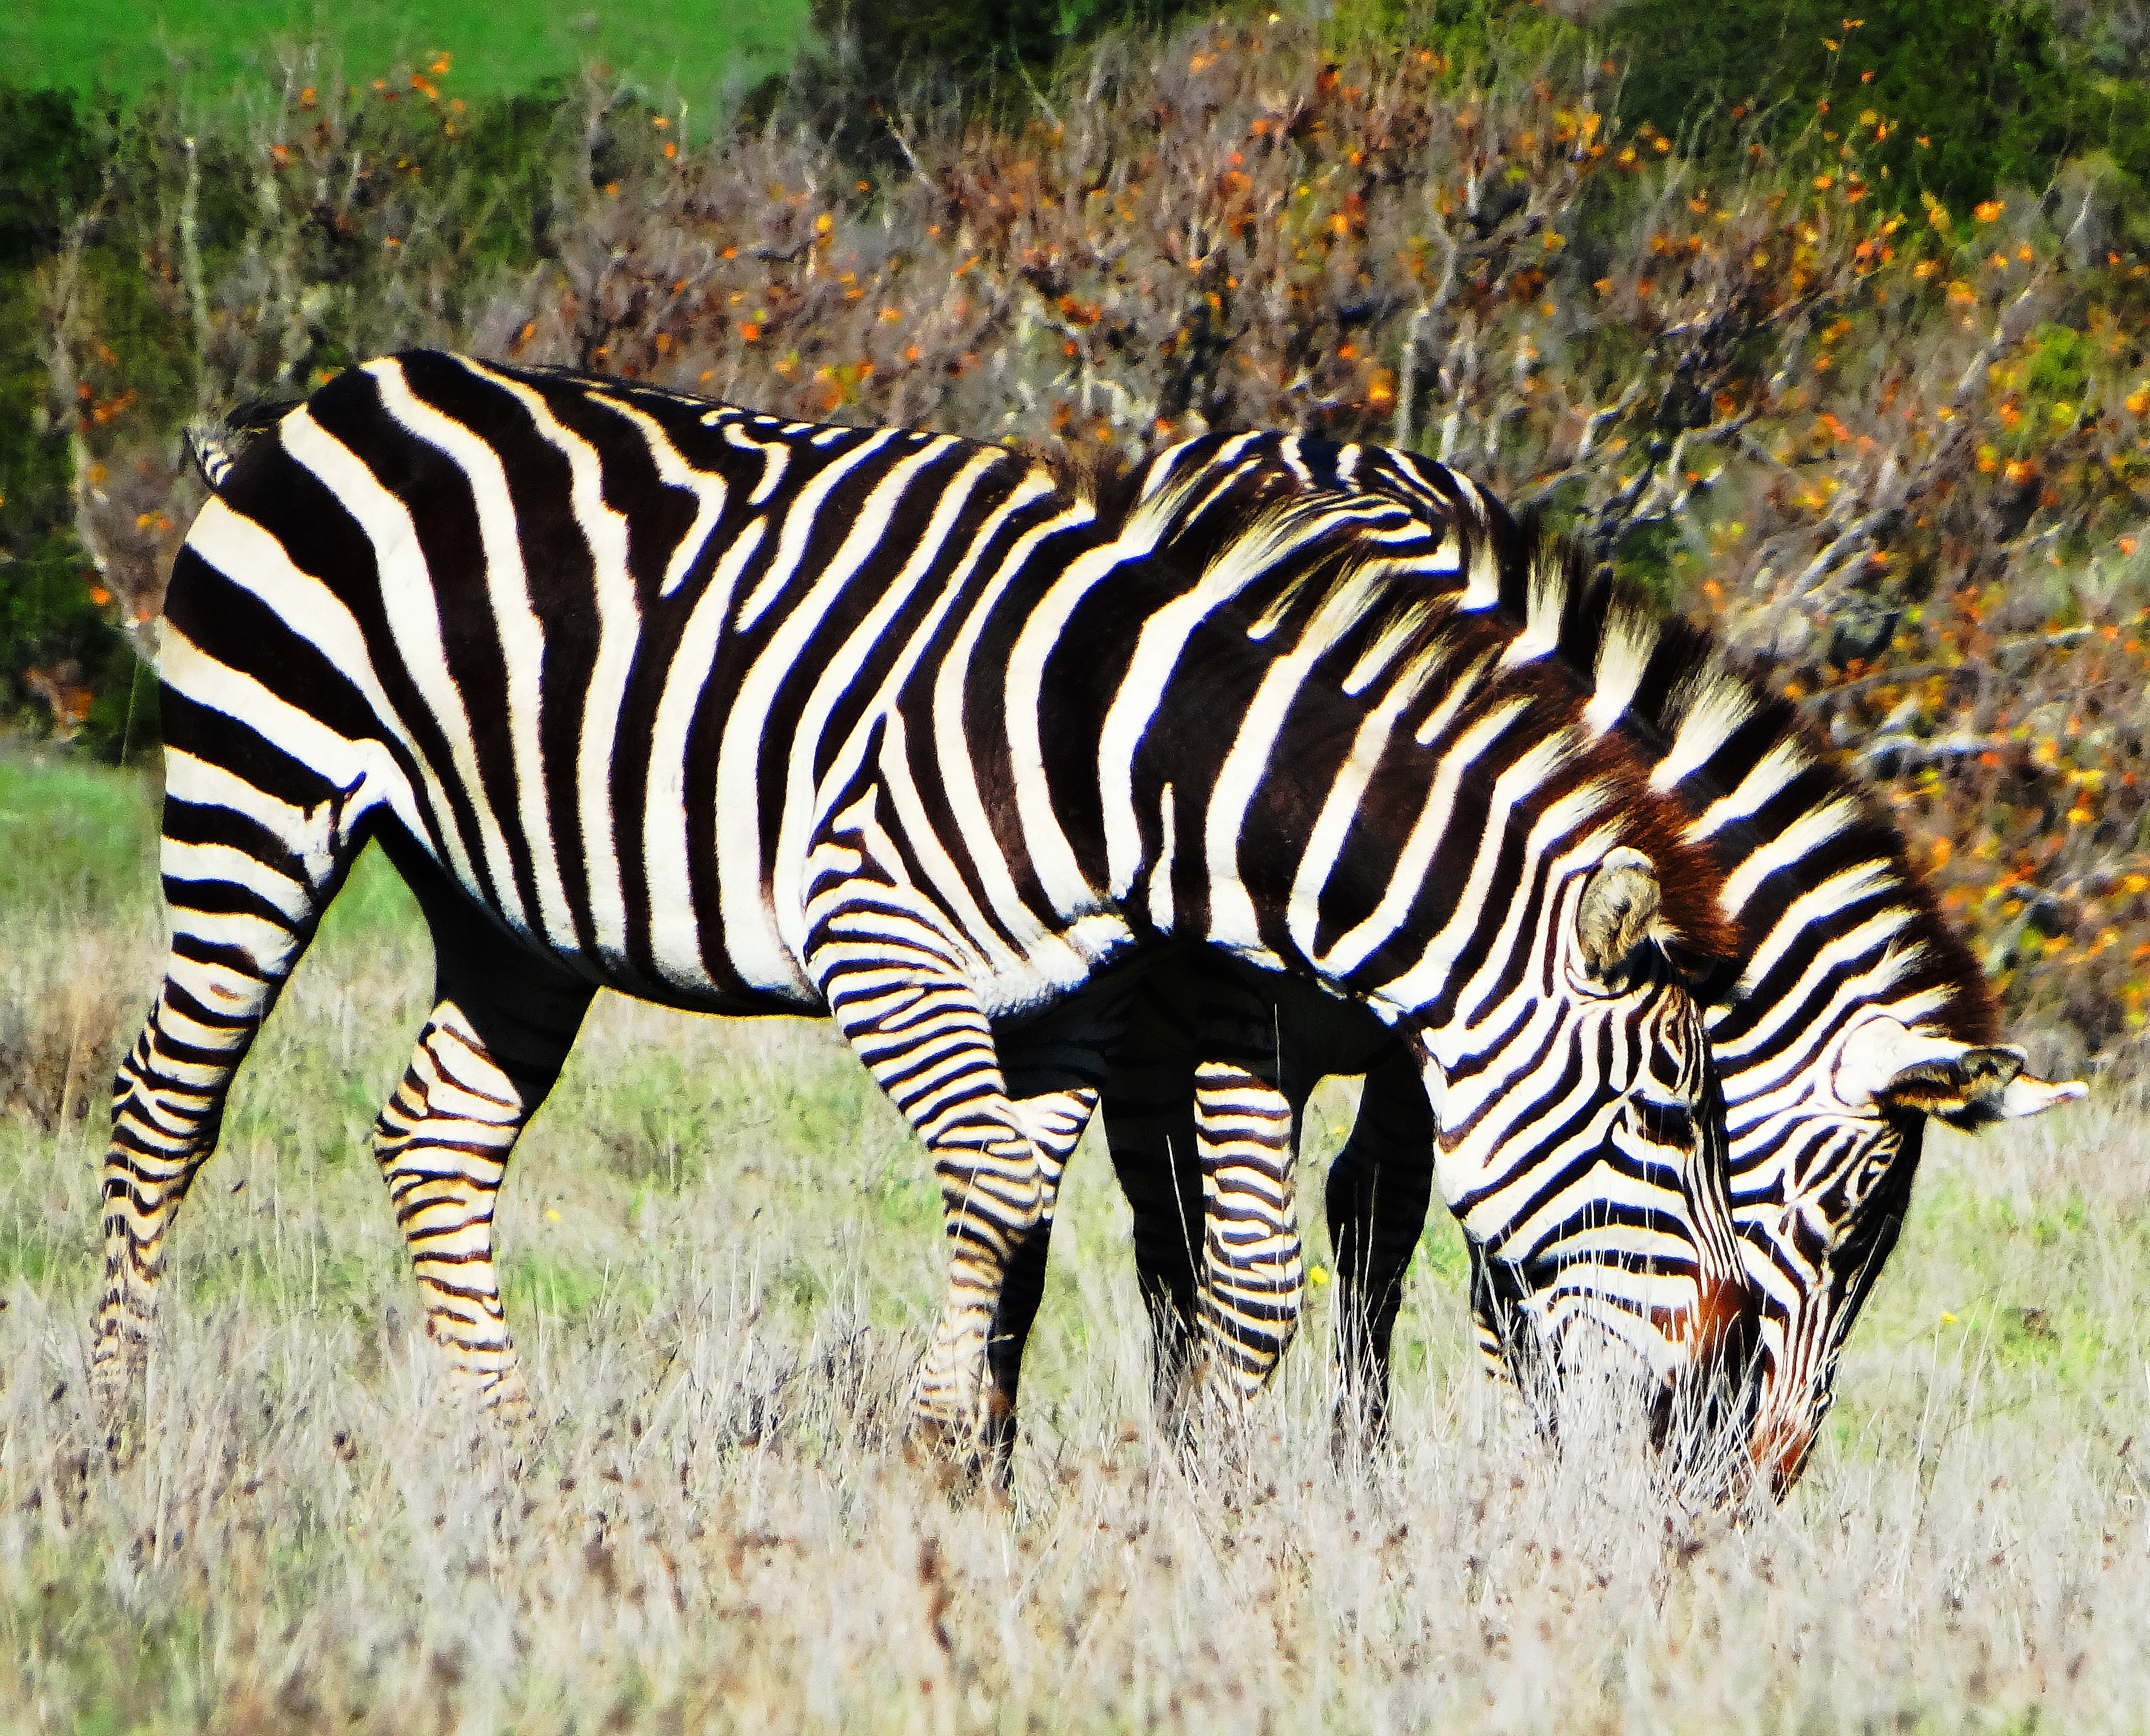 California's Wild Zebras & Elephant Kids~ |